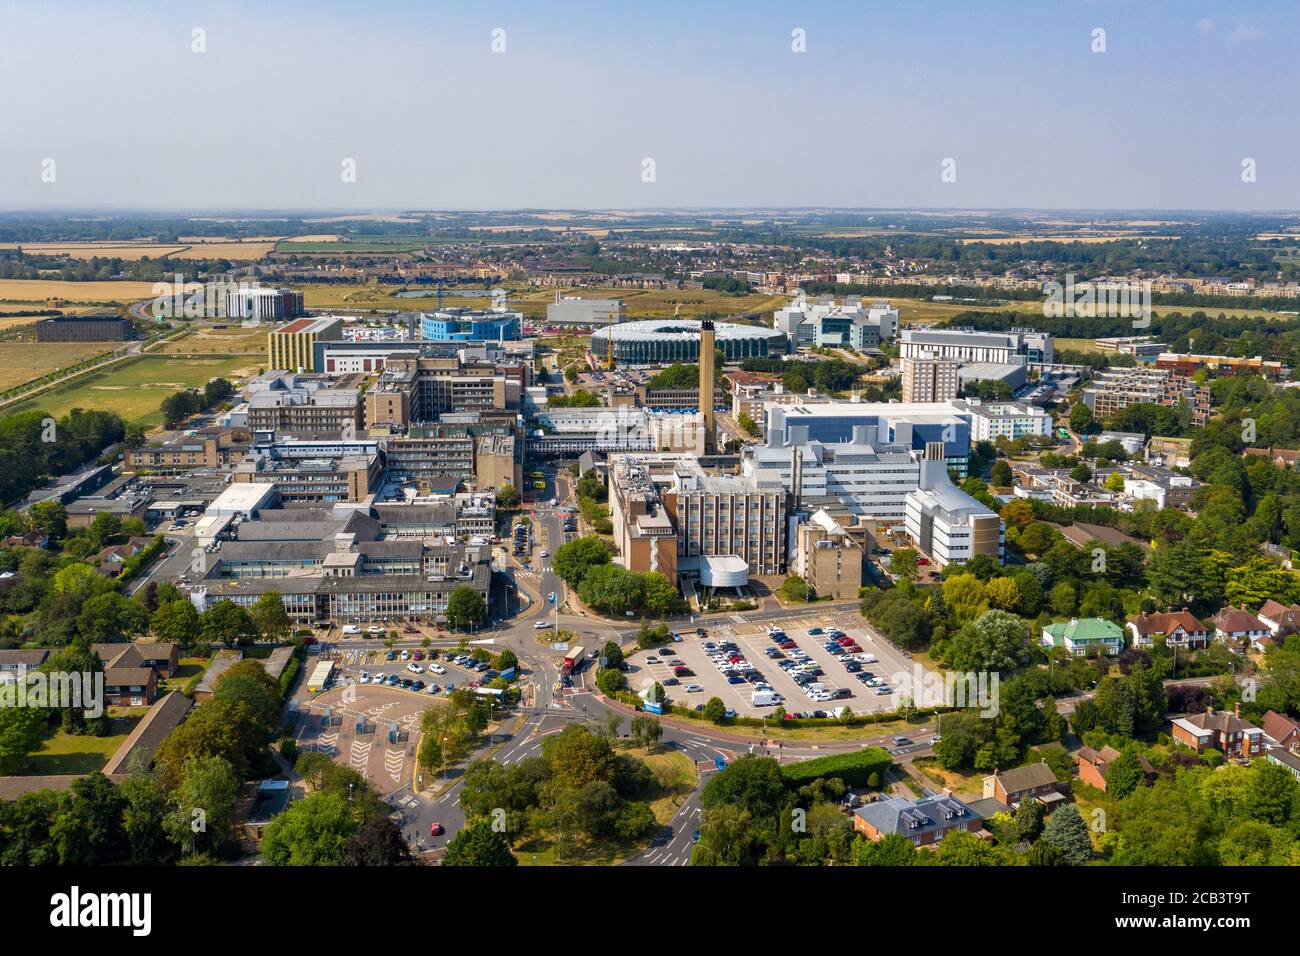 La Stock Picture del 10 agosto mostra una vista aerea del Cambridge Biomedical Campus, che comprende l'Addenbrooke's Hospital di Cambridgeshire. Il Cambridge Biomedical Campus è il più grande centro di ricerca medica e di scienza sanitaria in Europa. Il sito si trova all'estremità meridionale di Hills Road a Cambridge, Inghilterra. Foto Stock